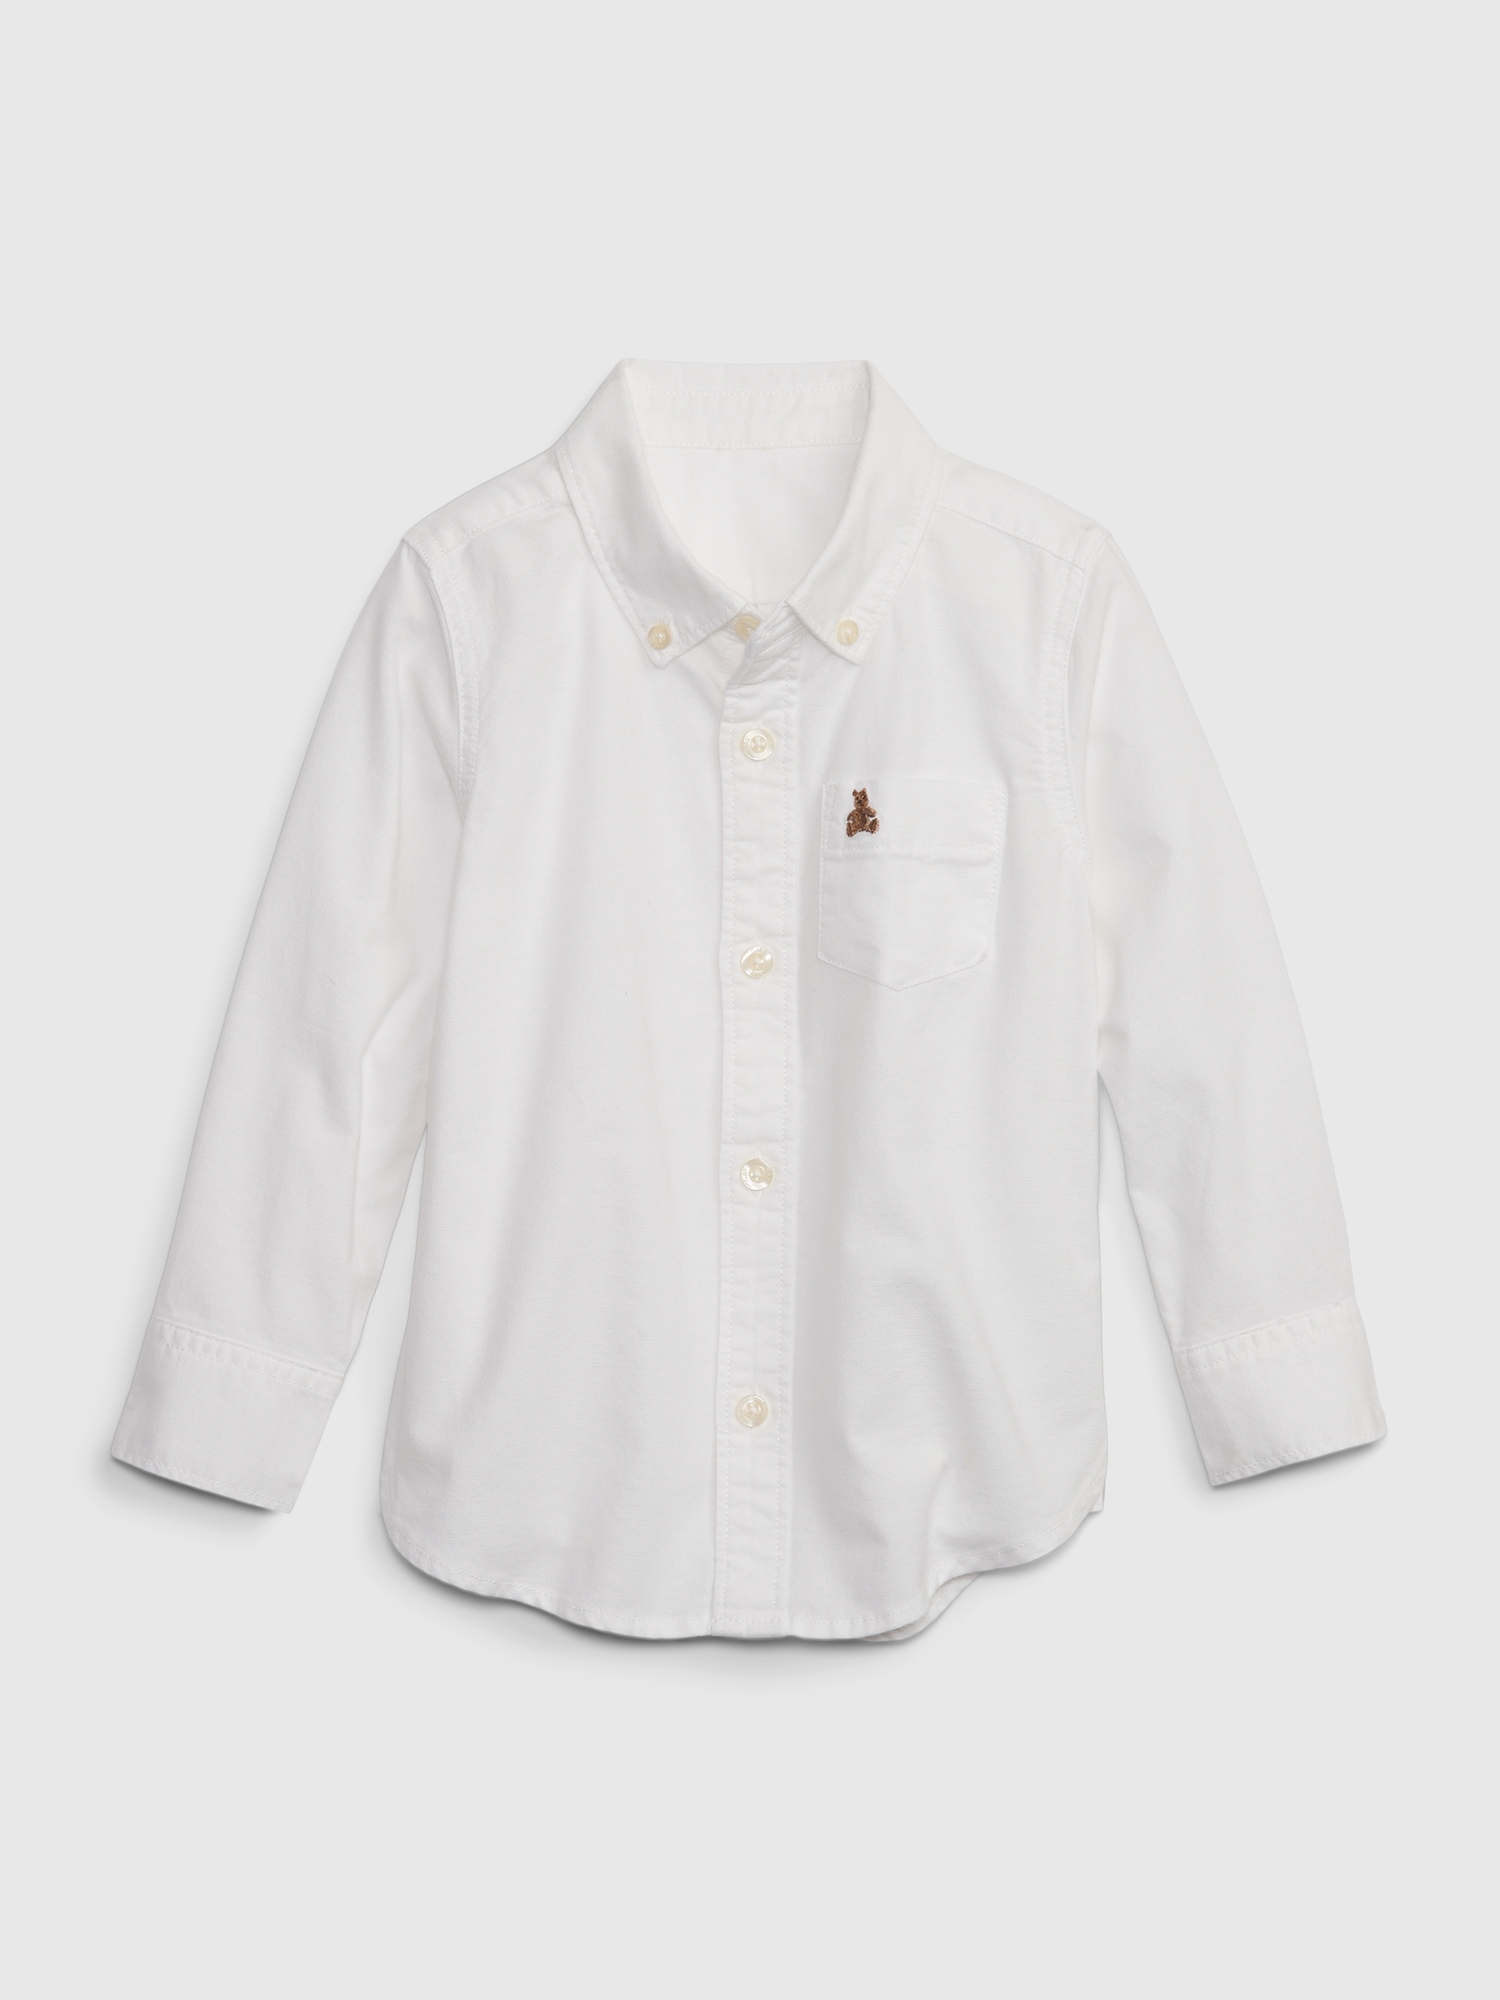 Gap Babies' Toddler Organic Cotton Oxford Shirt In White